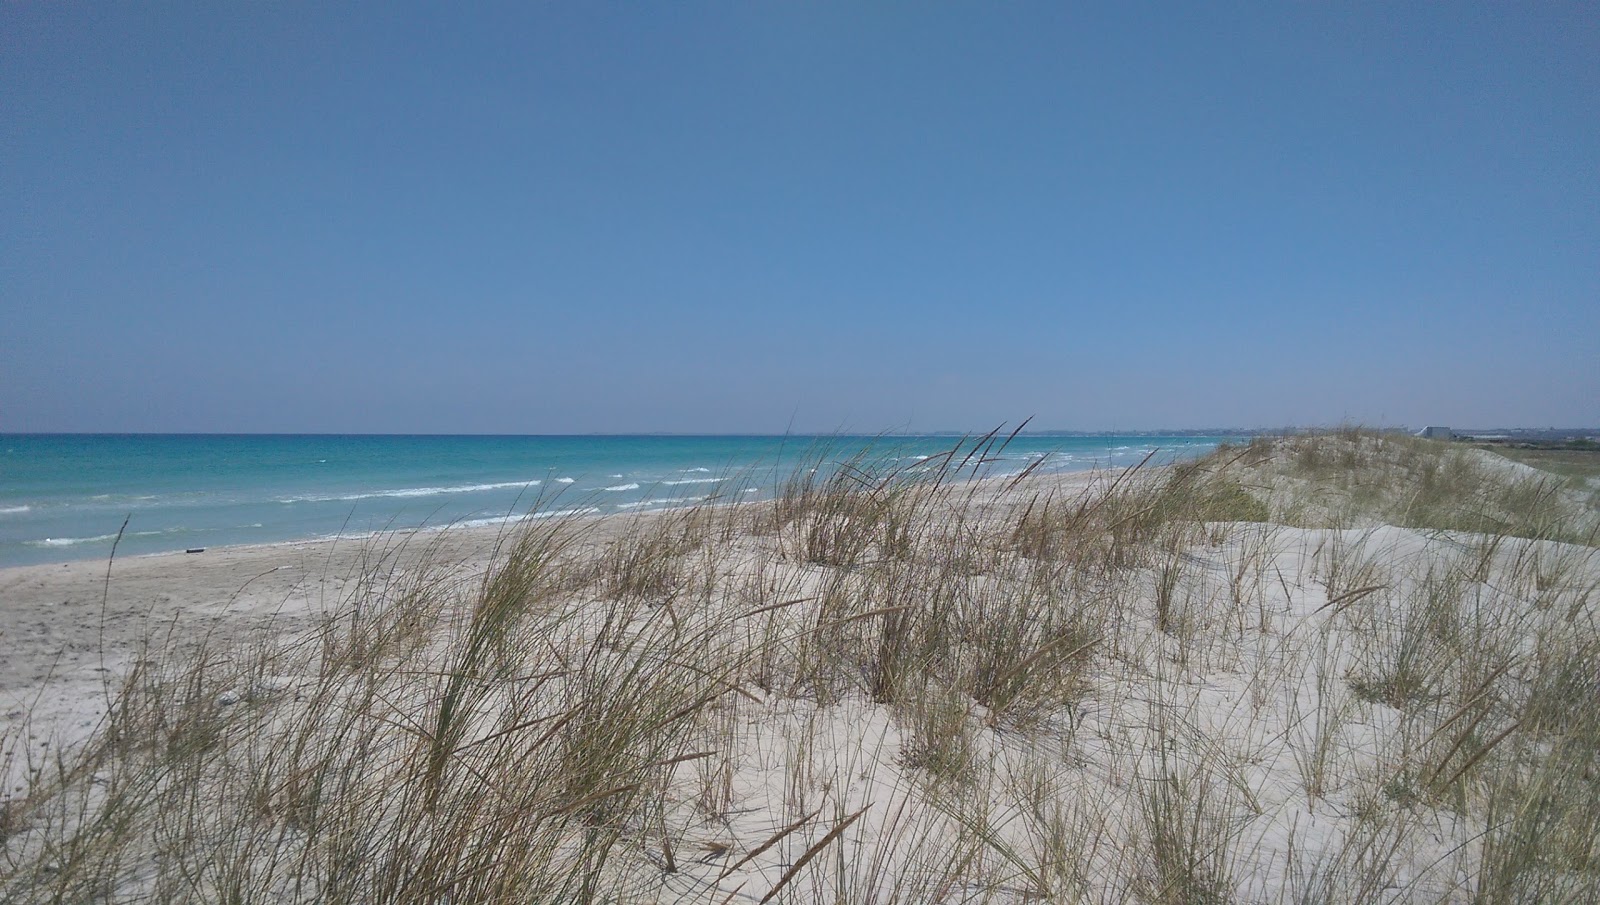 Foto de Chraff beach com areia branca superfície